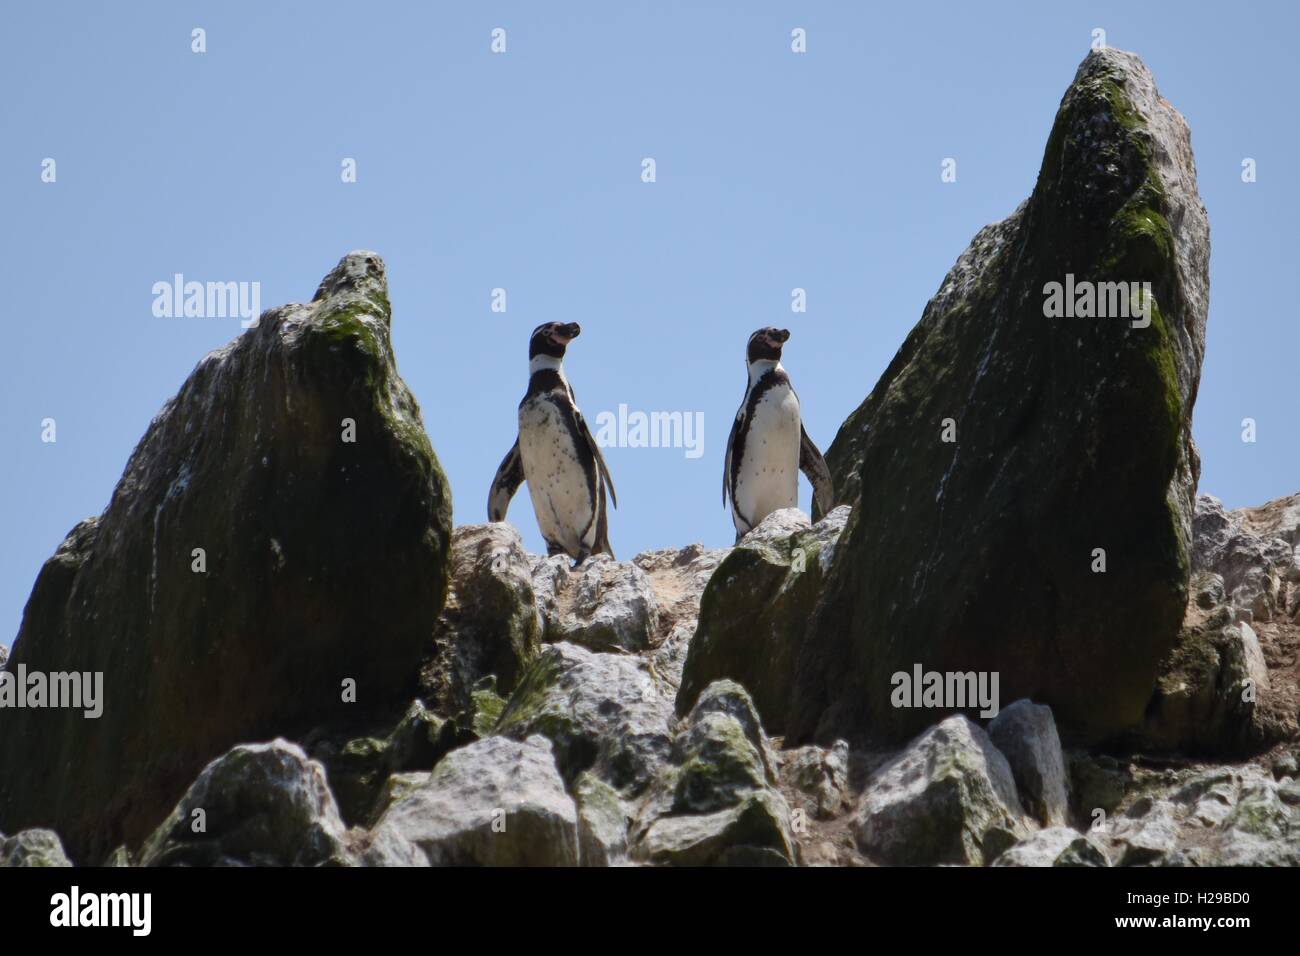 Penguin, Fauna, Paracas, Islas Ballestas, Peru Stock Photo